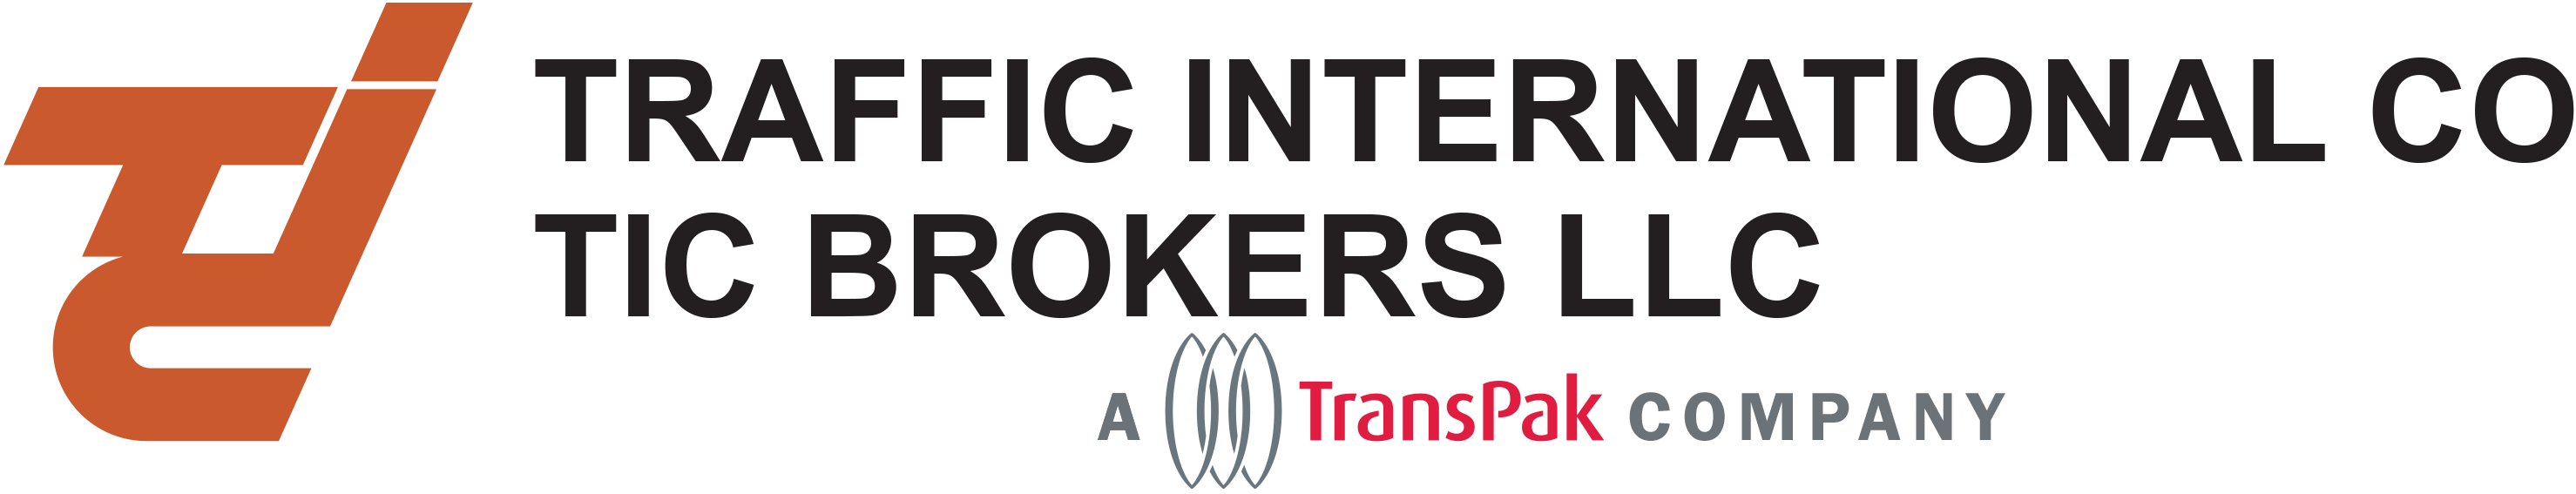 Traffic International Corp - A TransPak Company